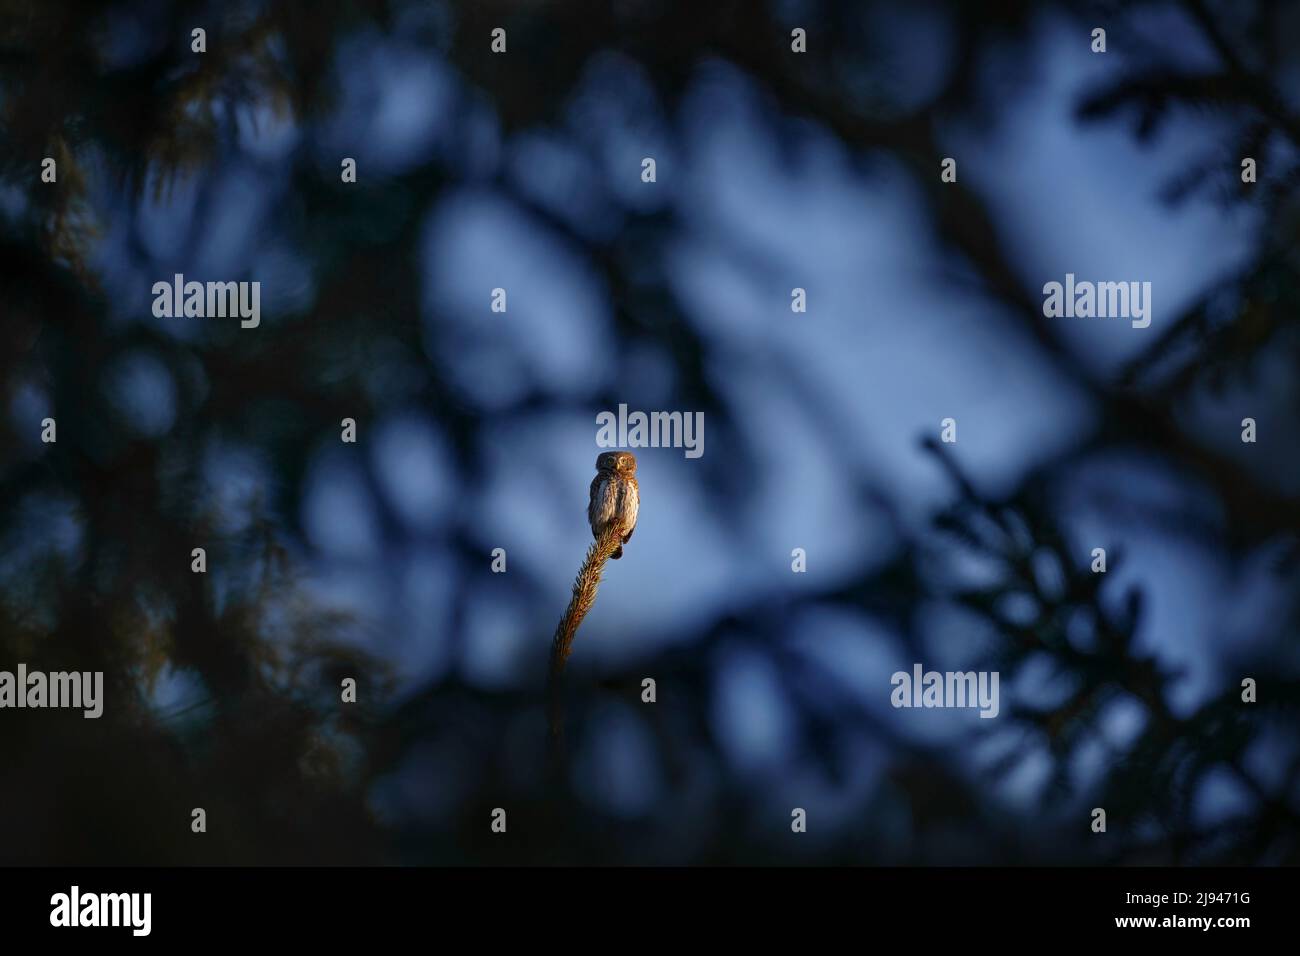 Die tschechische Tierwelt. Pygmäenkeule, sitzend auf Baum Fichtenzweig mit klarem dunklen Wald Hintergrund. Eurasischer Weißling im Lebensraum. Schöner Vogel in Even Stockfoto